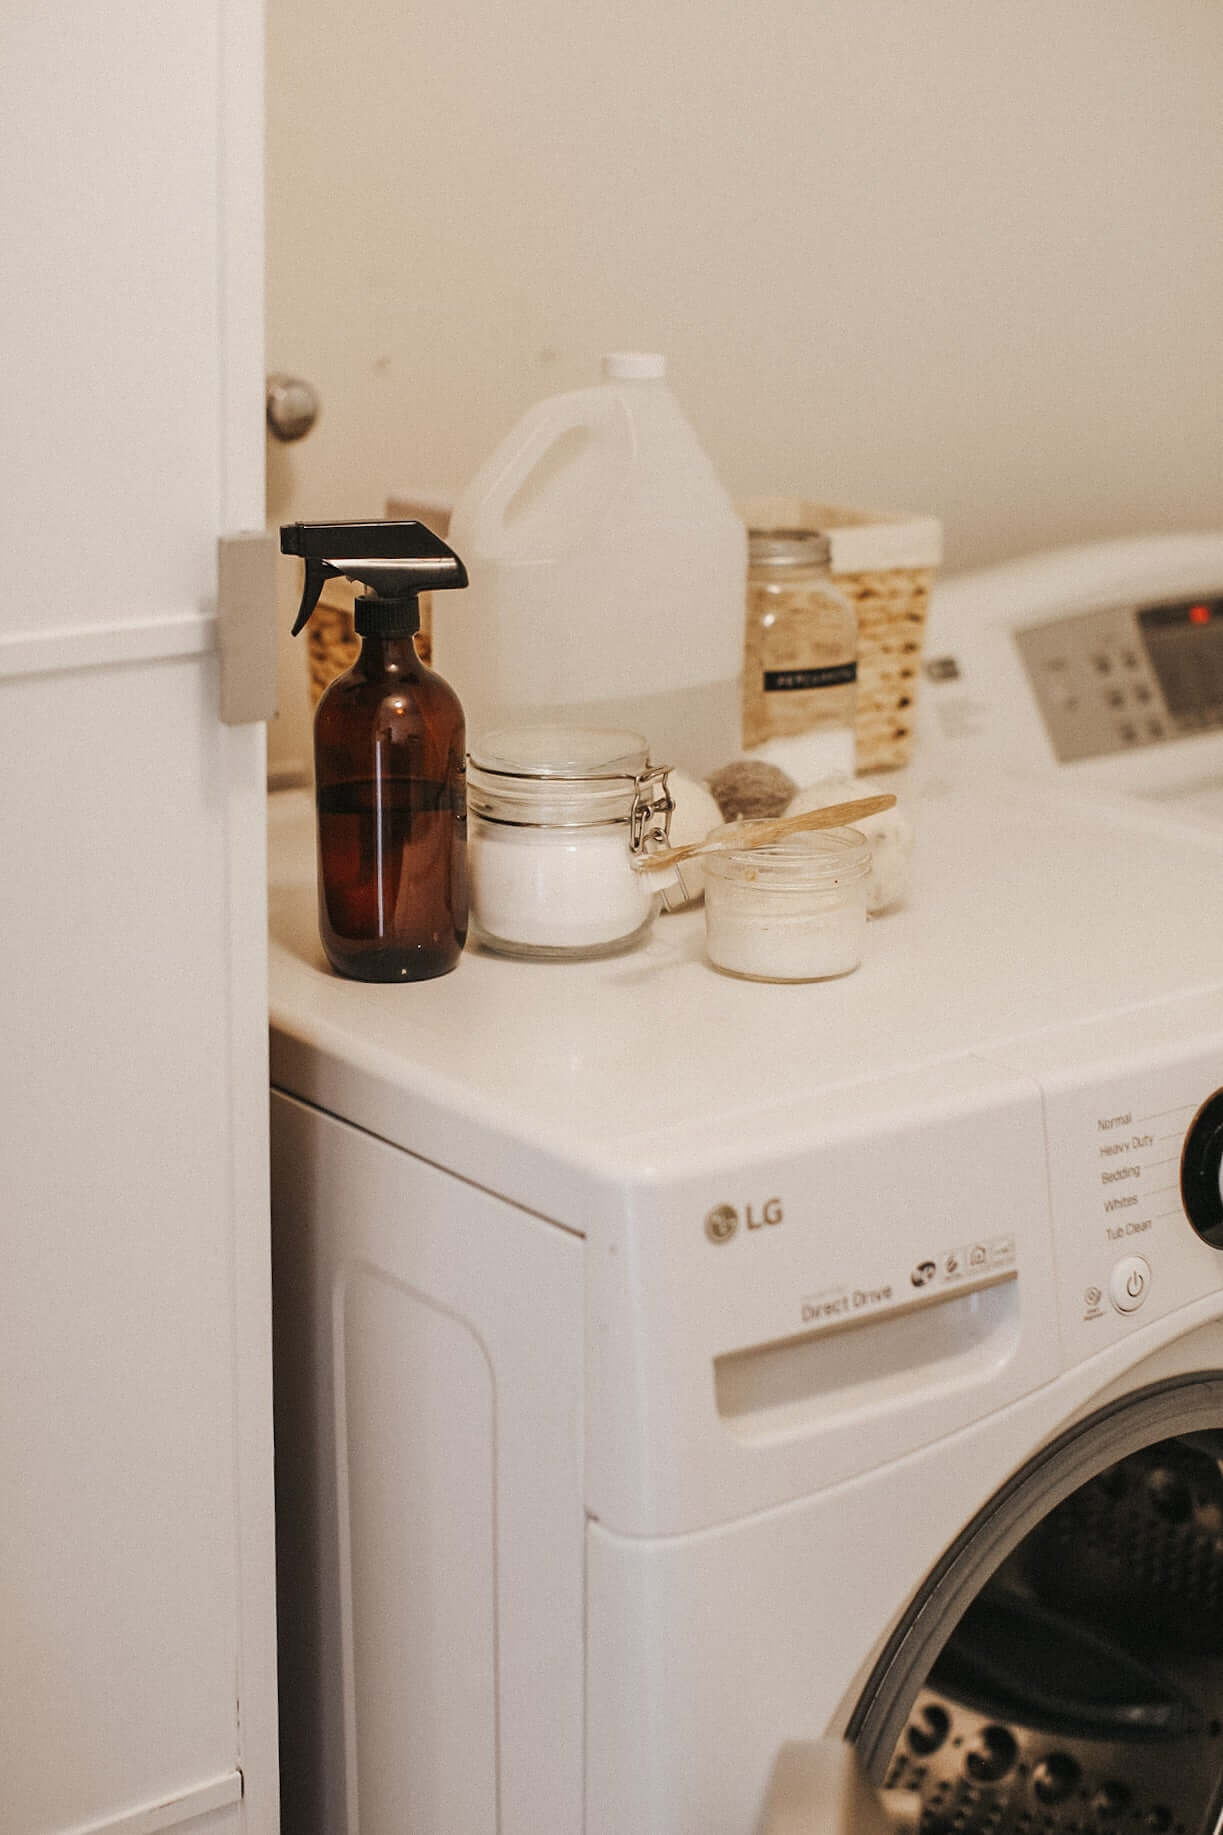 Nettoyer sa machine à laver avec nos astuces naturelles !